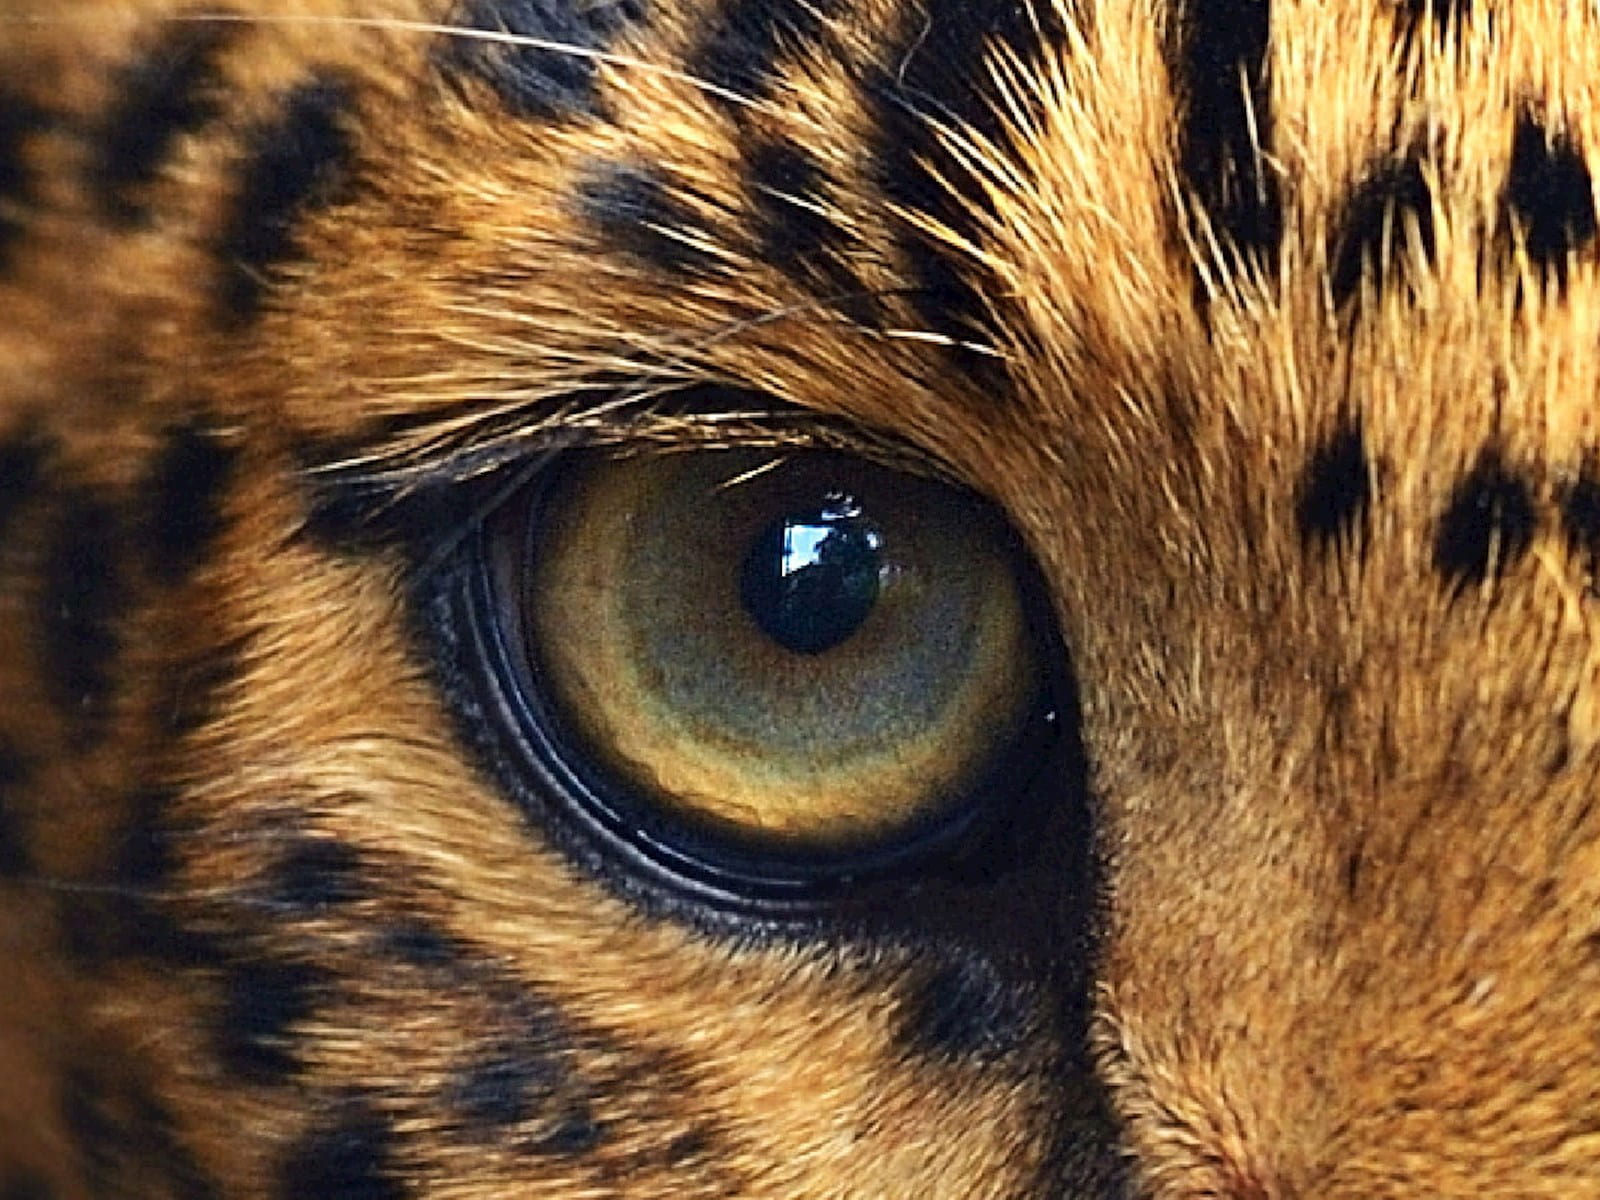 Close-up of a cheetah's eye